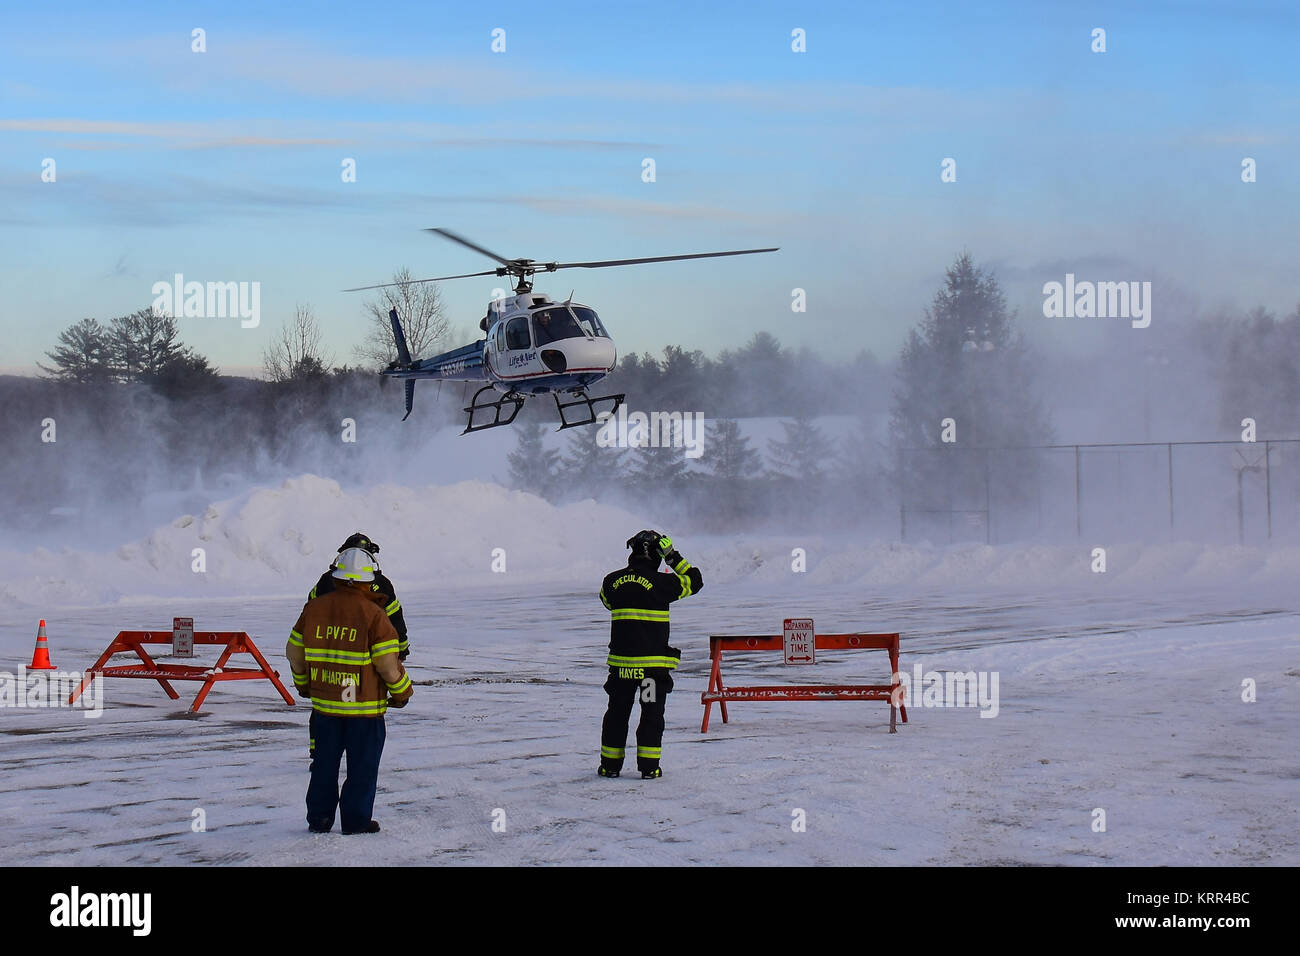 Un hélicoptère d'évacuation d'urgence qui viennent pour un atterrissage sur une hélisurface couvertes de neige avec deux pompiers prêt à assister. En spéculateur, NY, USA Banque D'Images